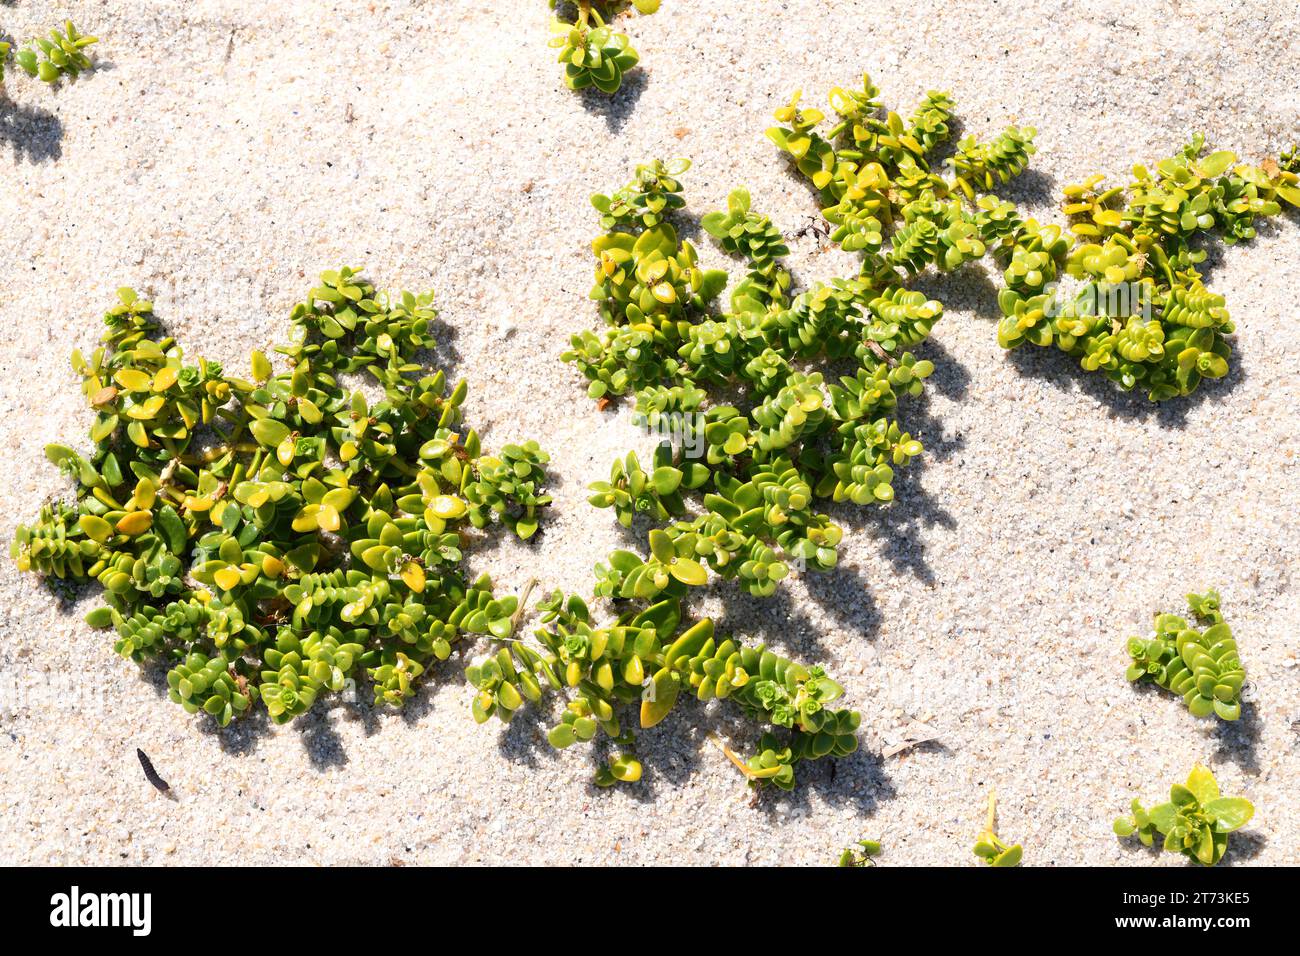 L'erba arenaria marina (Honckenya peploides) è un'erba perenne commestibile succulenta originaria delle coste sabbiose dell'Europa settentrionale e delle coste atlantiche della Spagna settentrionale. Foto Stock